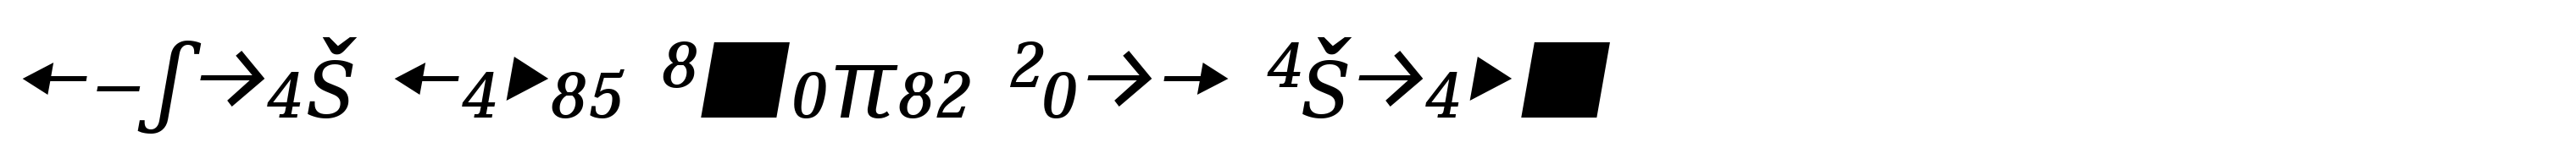 Skopex Serif Italic Caps Expert